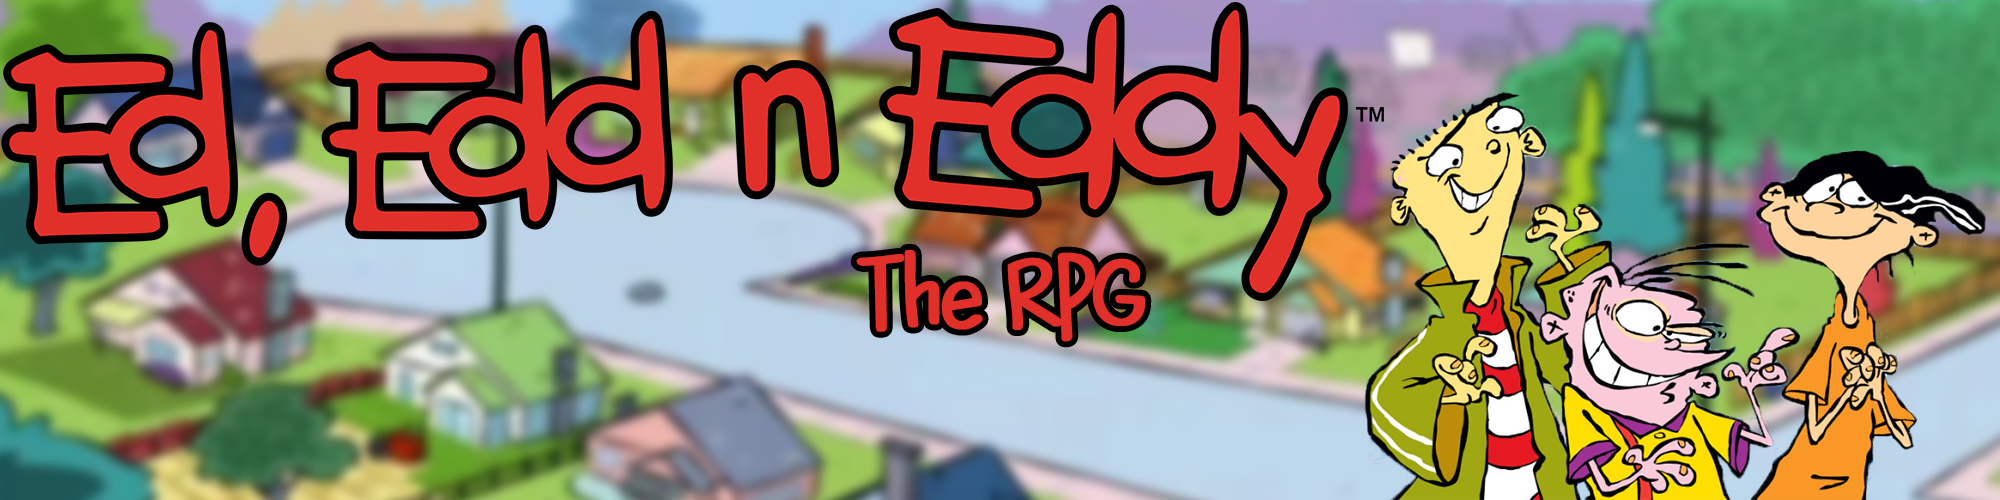 Ed Edd n Eddy RPG